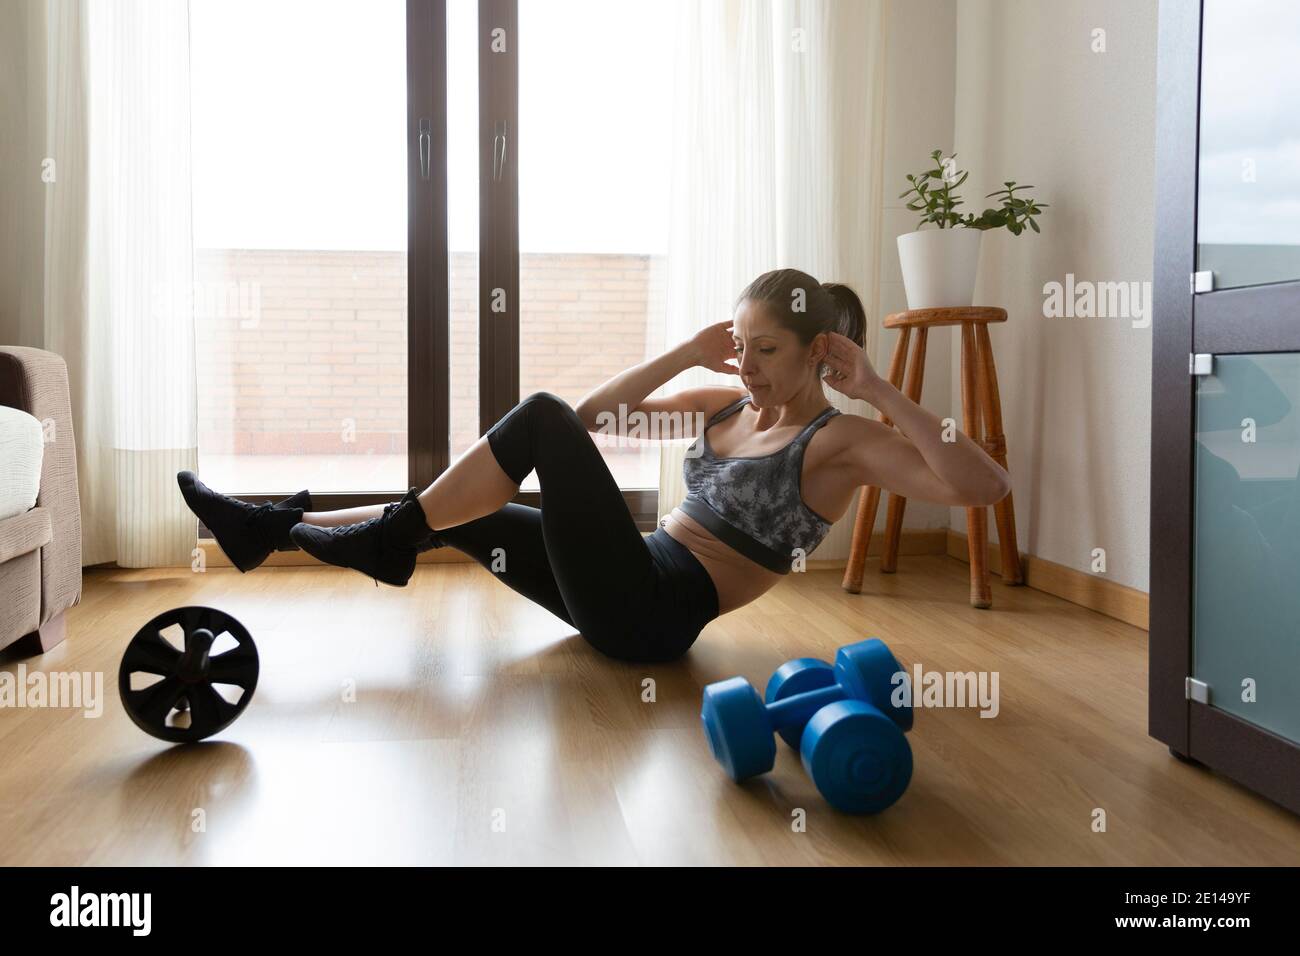 Fitness fille faisant des exercices abdominaux à la maison. Concept du sport, de la santé et du bien-être. Espace pour le texte. Banque D'Images